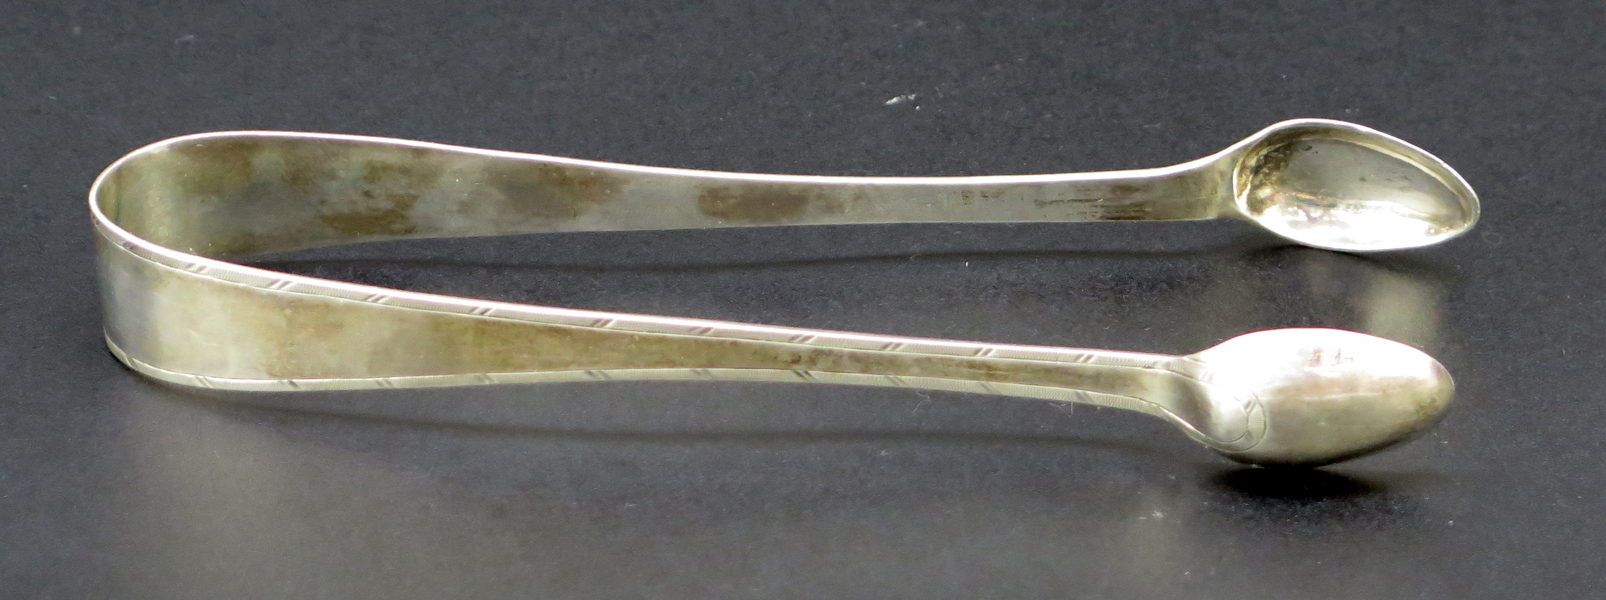 Sockertång, silver, sengustaviansk, stämplar Nils Tornberg Linköping 1802, l 14,5 cm, vikt 30 gram_31576a_lg.jpeg